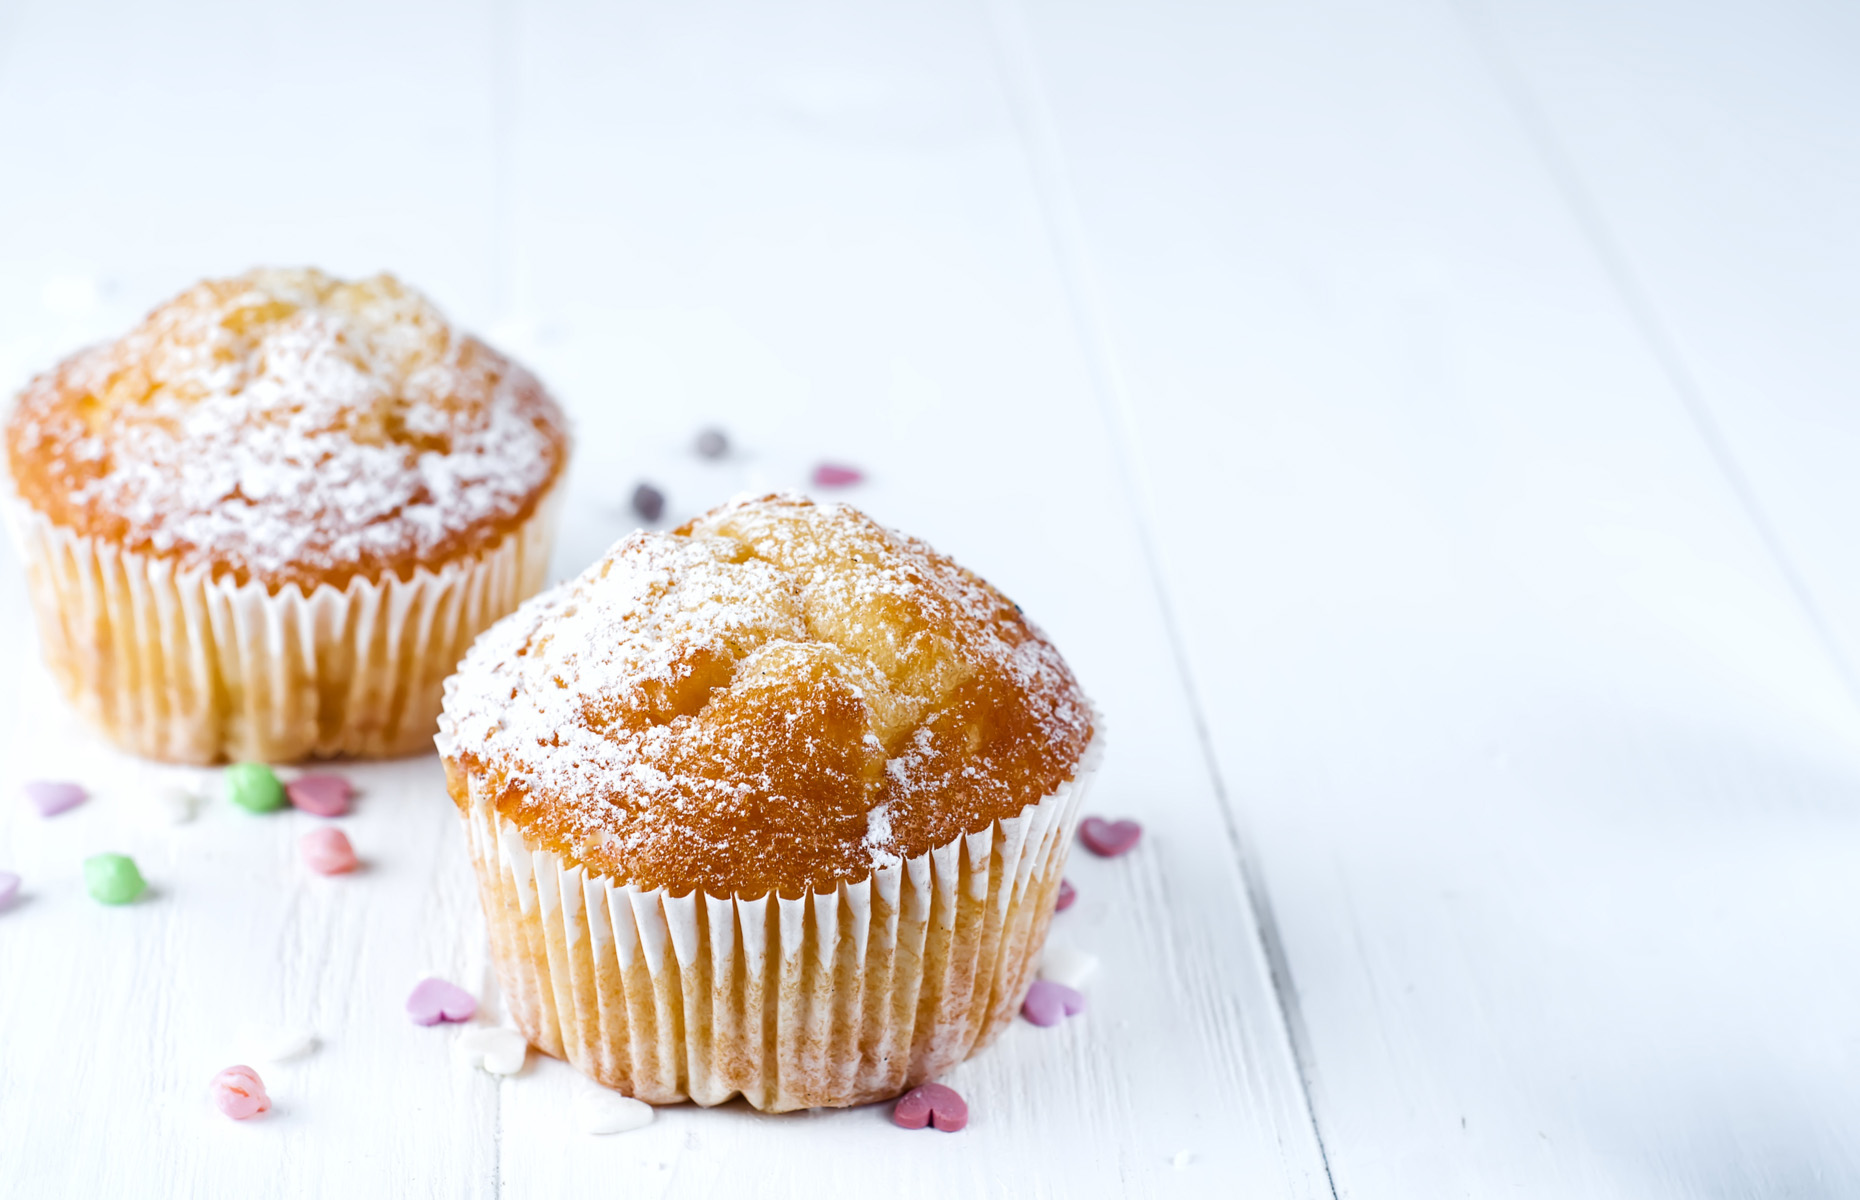 Vanilla cupcakes (Image: OleksandrKovalenko/Shutterstock)